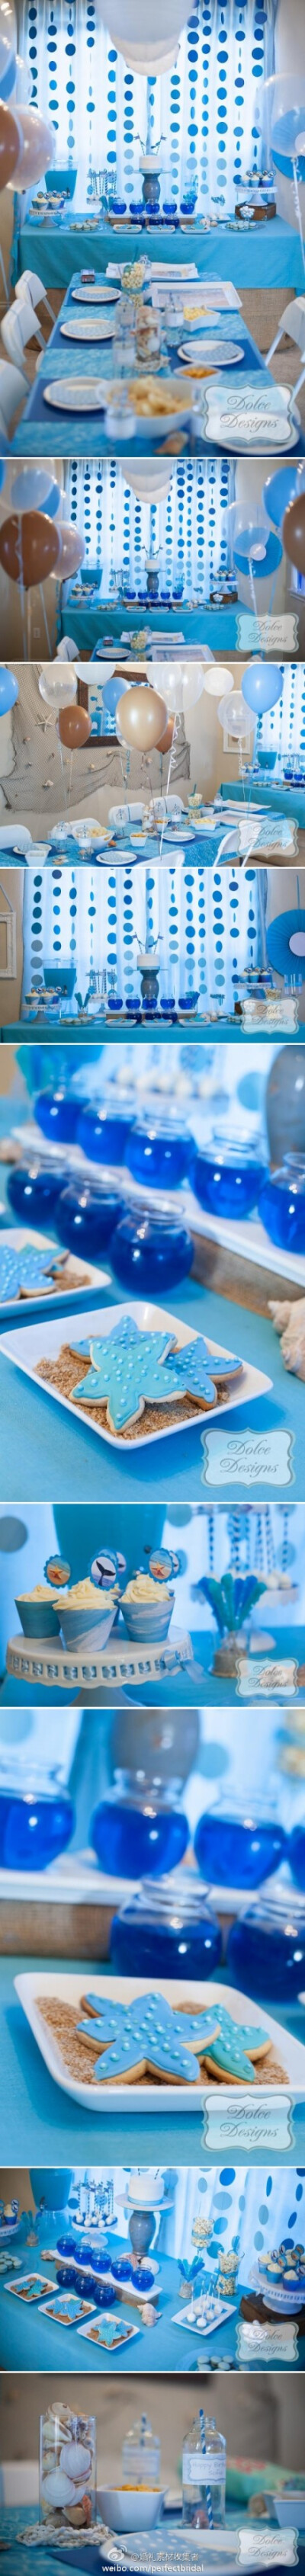 海洋主题的儿童生日Party布置--蓝色甜品桌，蓝色的餐桌，蓝色的气球，以及各种海洋元素细节，营造出梦幻的海洋世界。